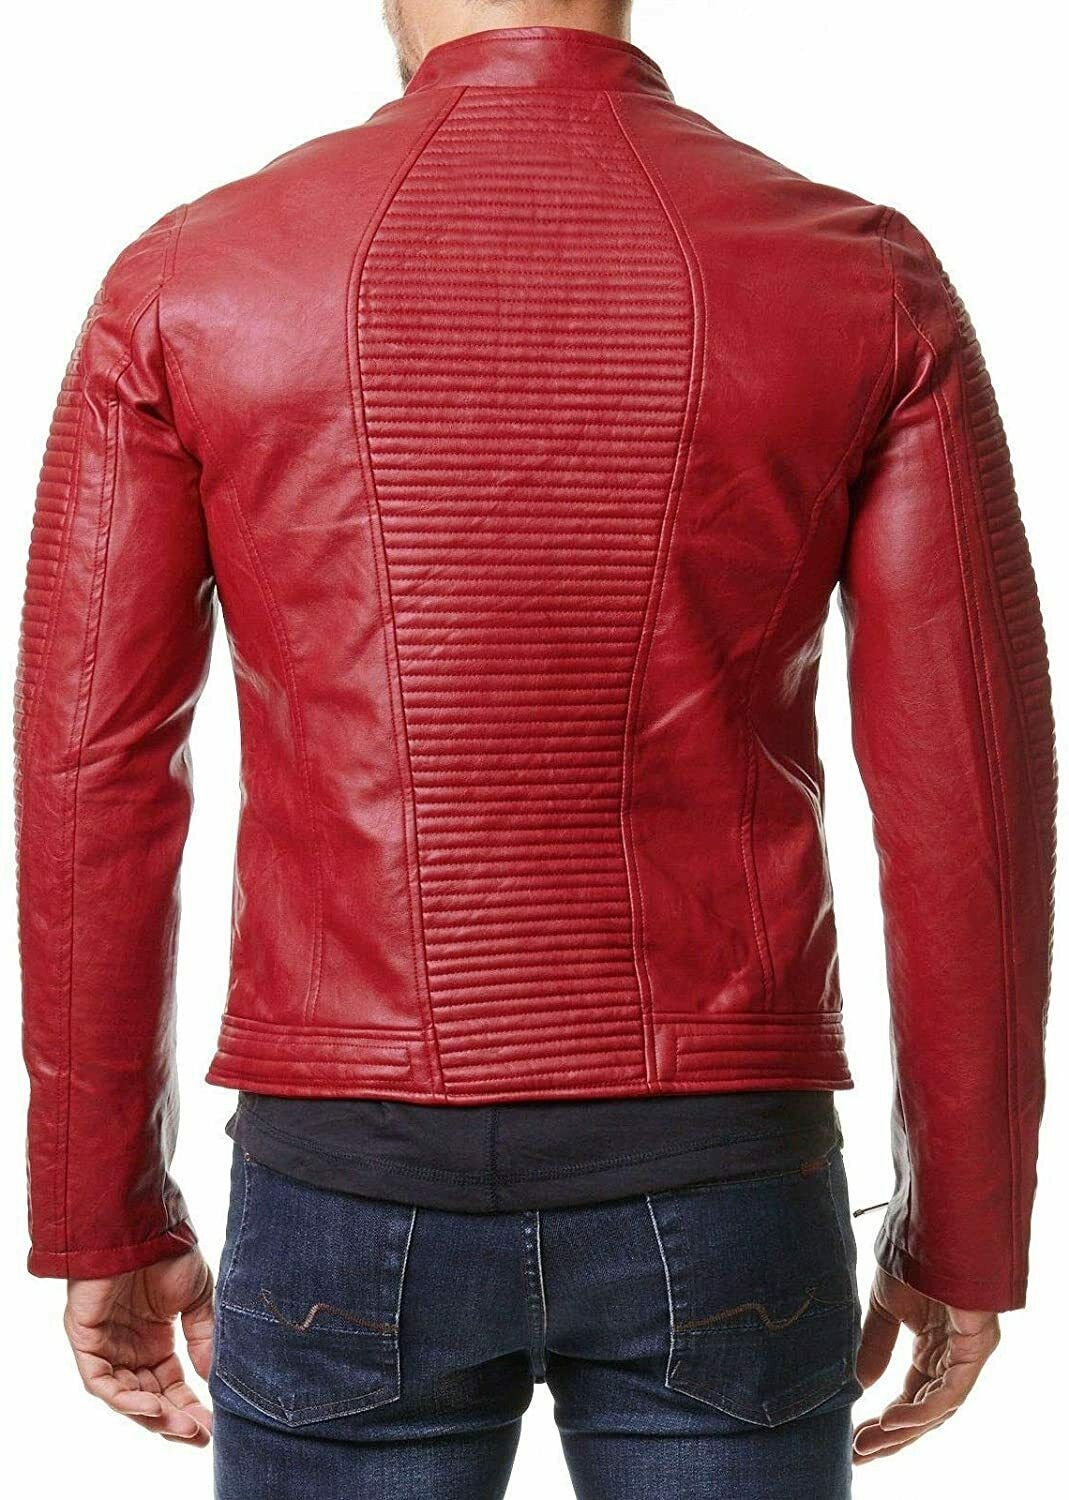 Mens Leather Red Jacket Slim Fit Biker Motorcycle Genuine - Etsy